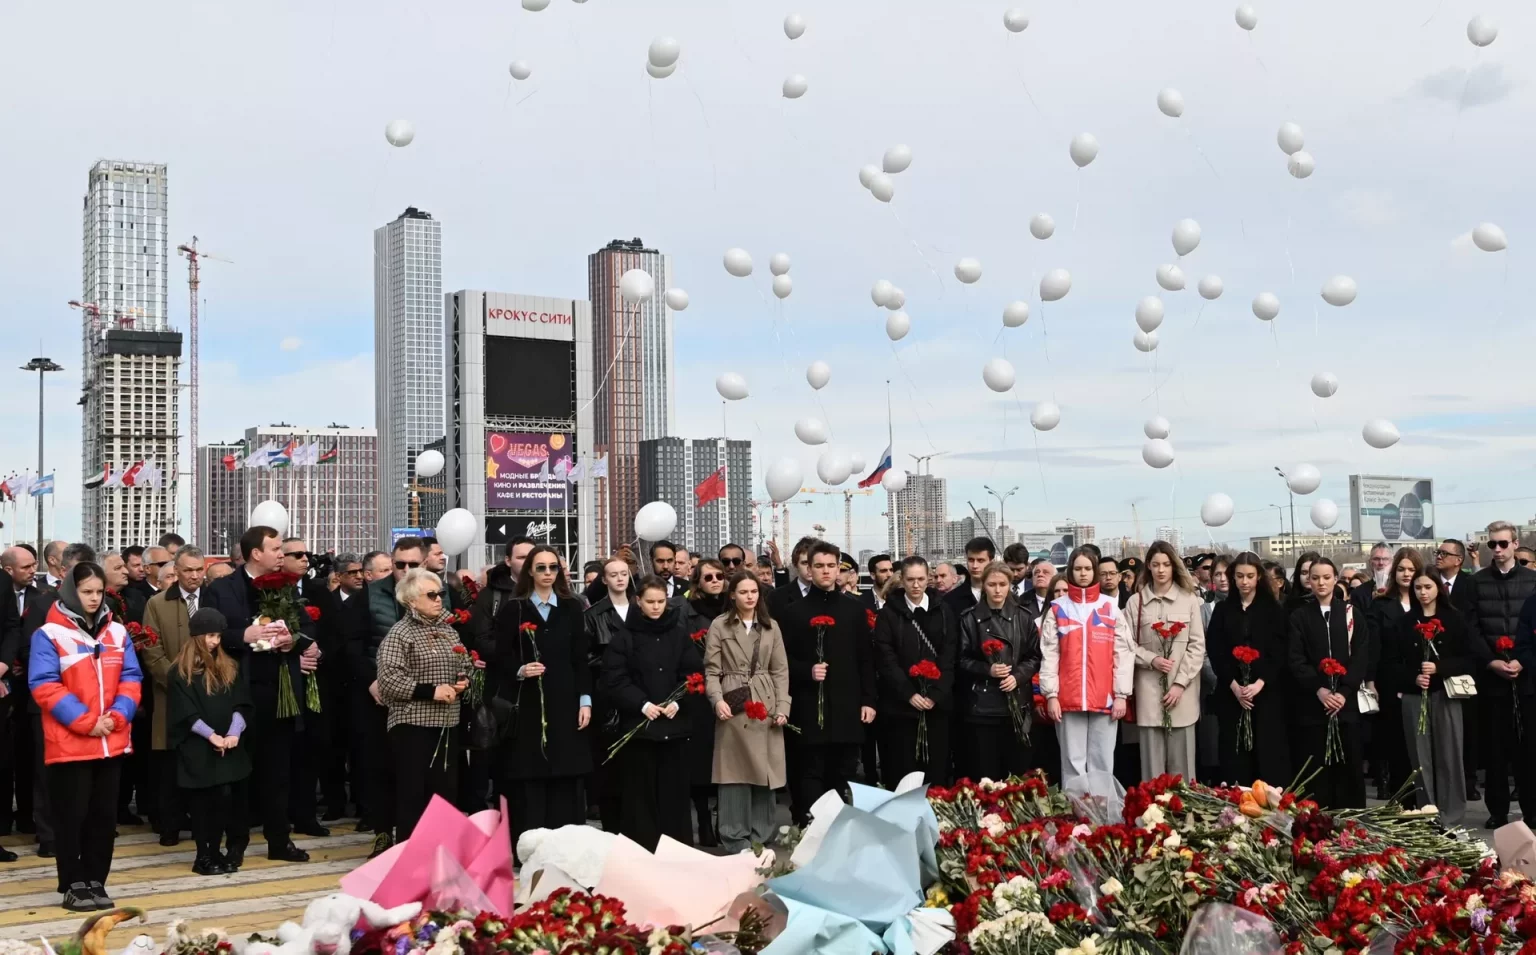 Սպիտակ փուչիկներ՝ դեպի երկինք. ՌԴ-ում ակցիա են կազմակերպել ի հիշատակ «Կրոկուսի» զոհերի